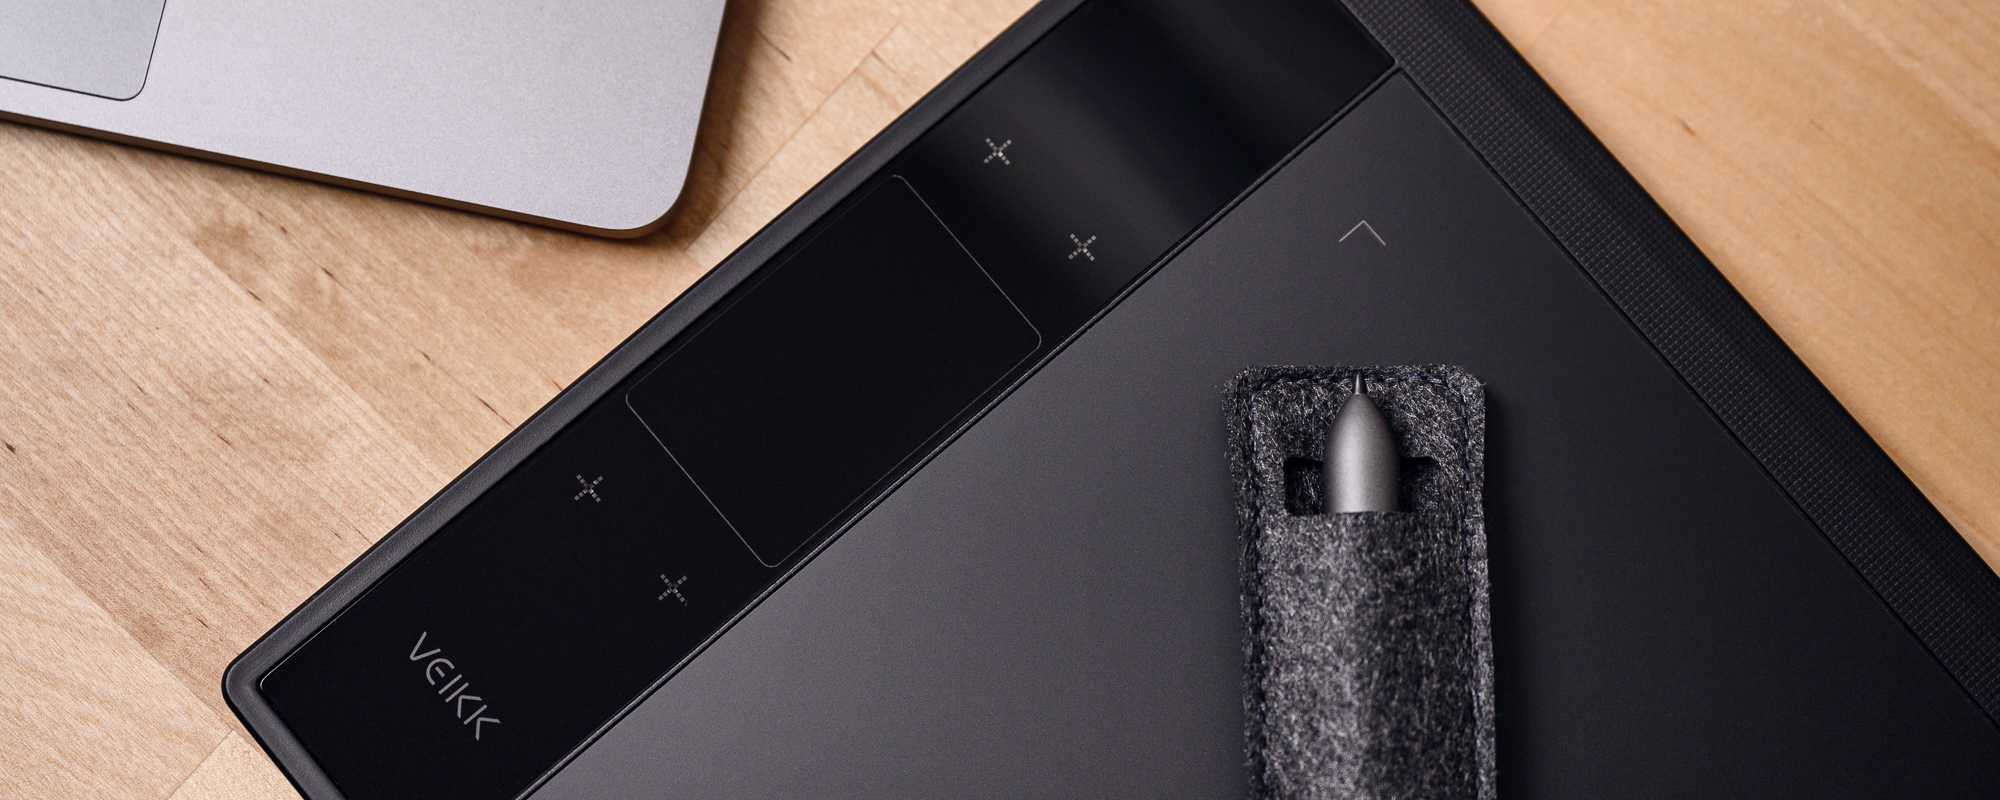 Zdjęcie - tablet graficzny Veikk A30 na jasnobrązowym biurku, a na nim piórko schowane w materiałowy pokrowiec